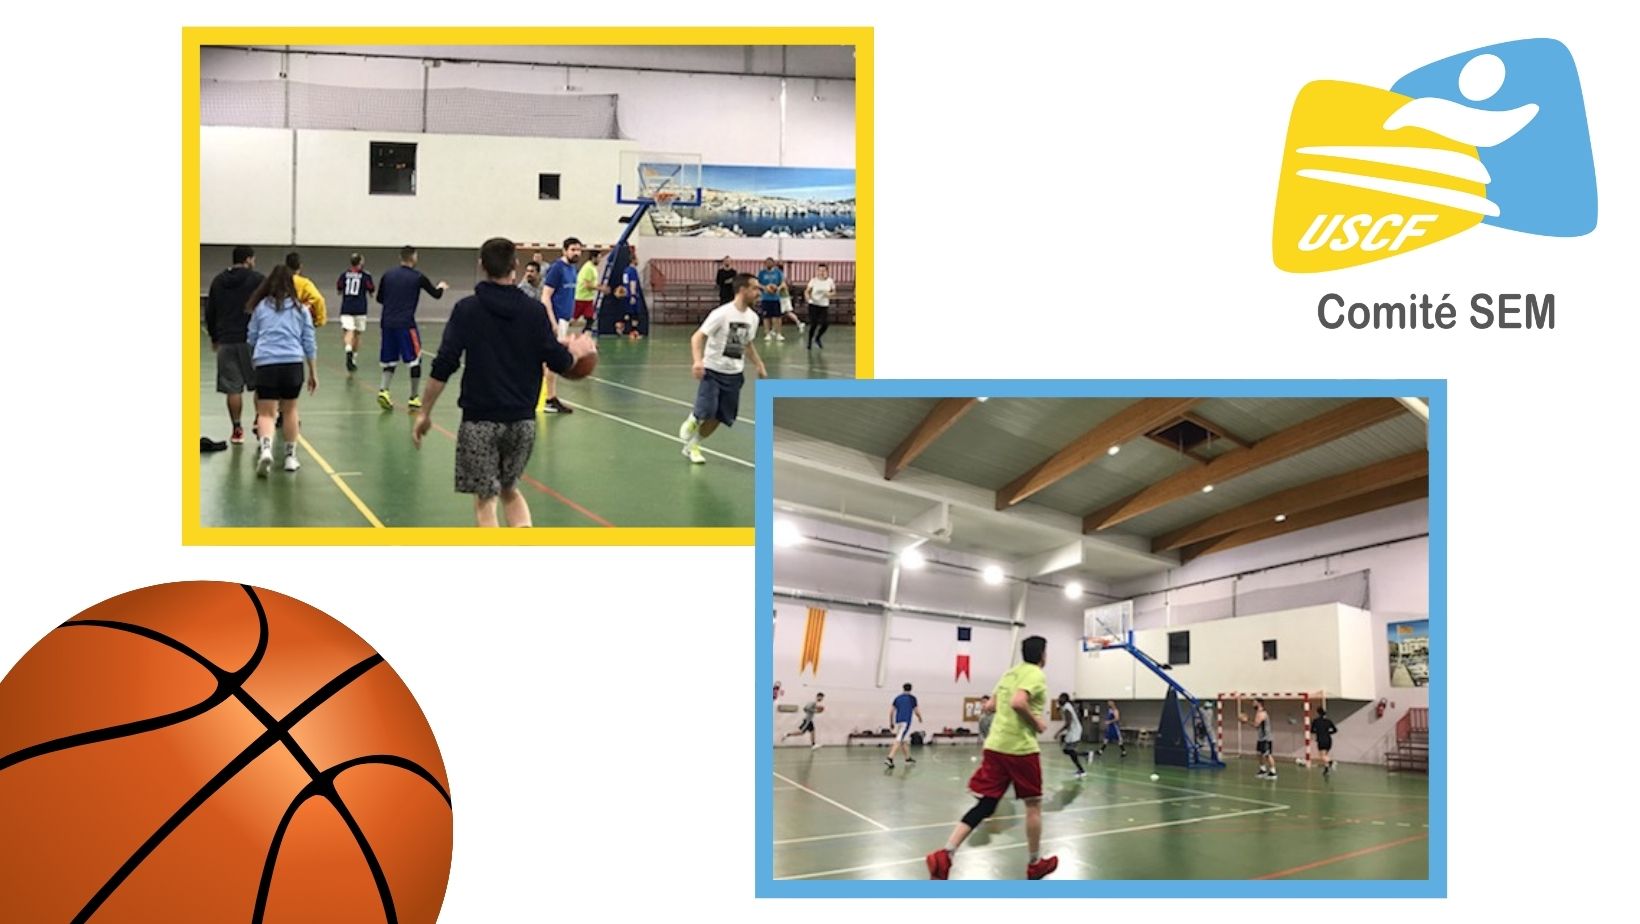 Le Challenge de Basket-Ball du Comité SEM à Port-Vendres